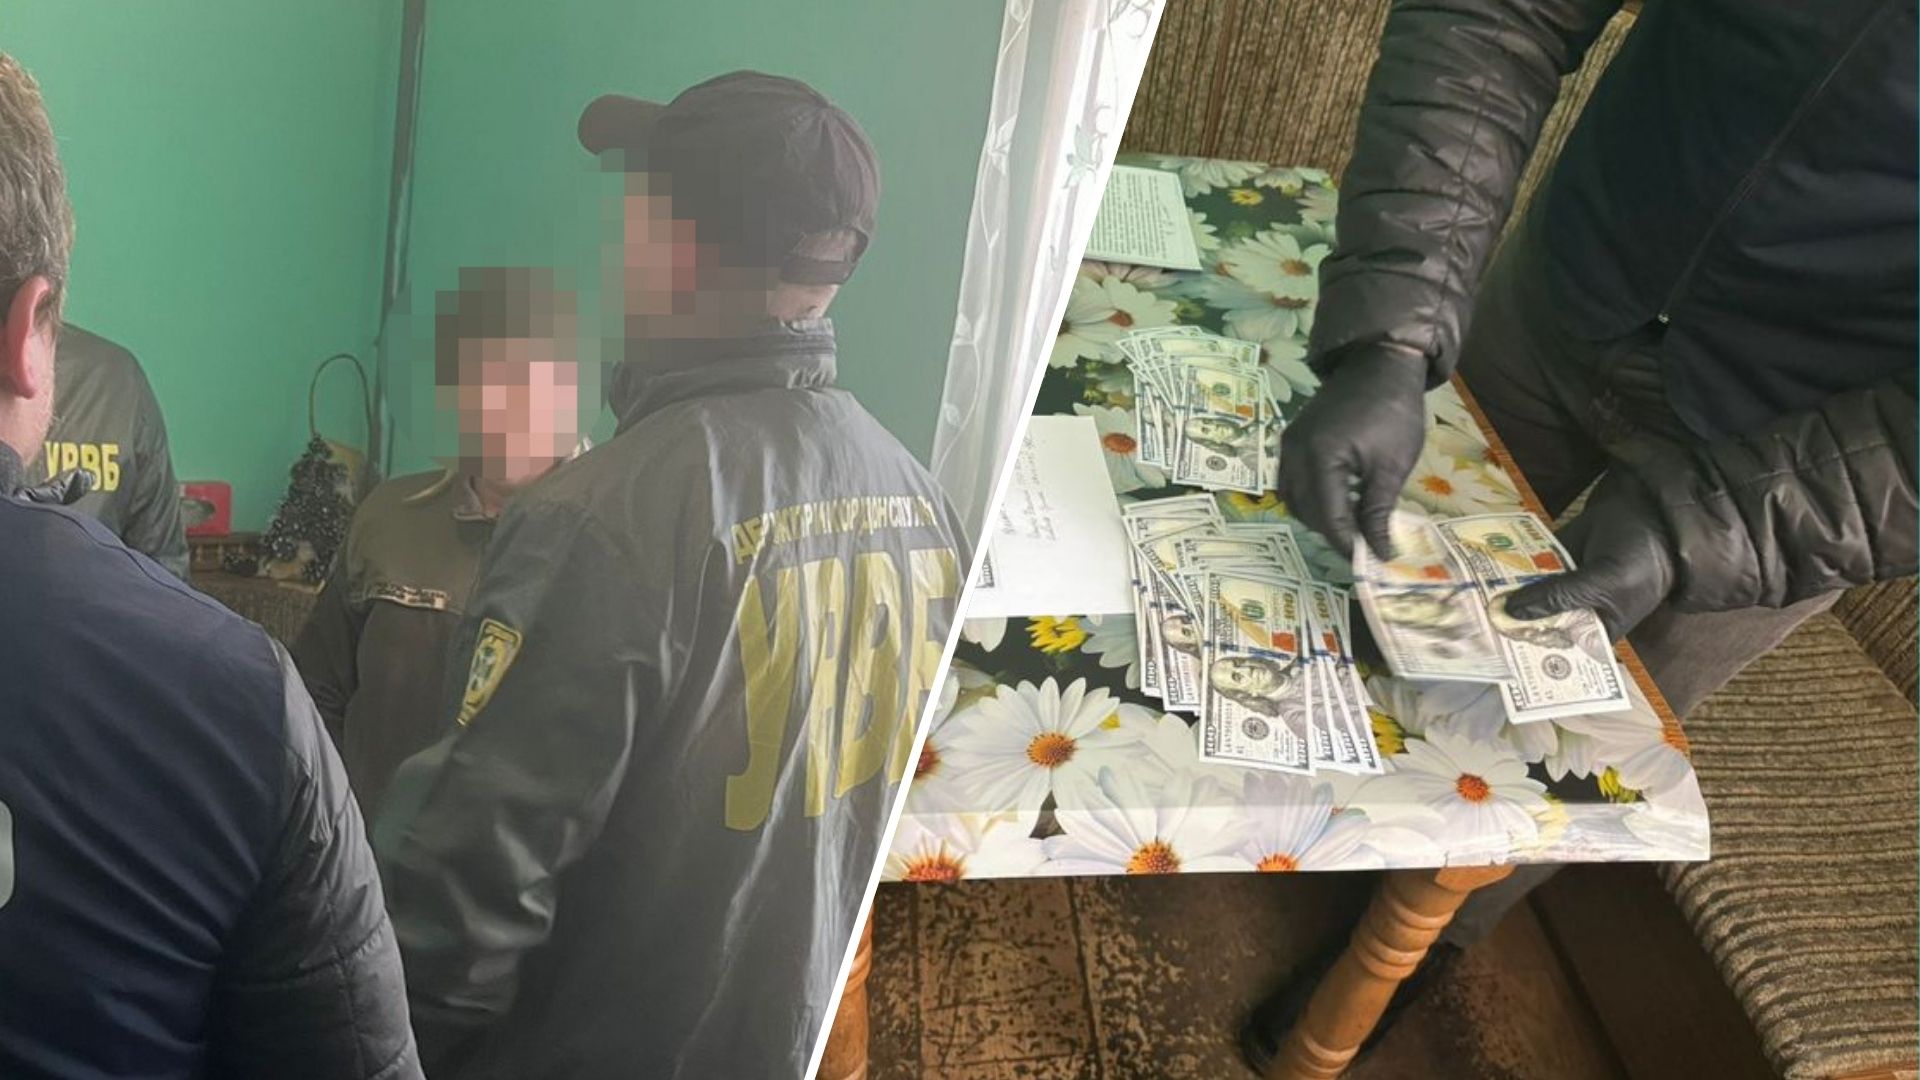 Az SBI alkalmazottai az Állami Határőrszolgálattal együttműködve őrizetbe vettek egy rendfenntartó tisztet Lviv régióban, aki megígérte, hogy 9000 dollárért átcsempész egy katonakorú férfit a határon.